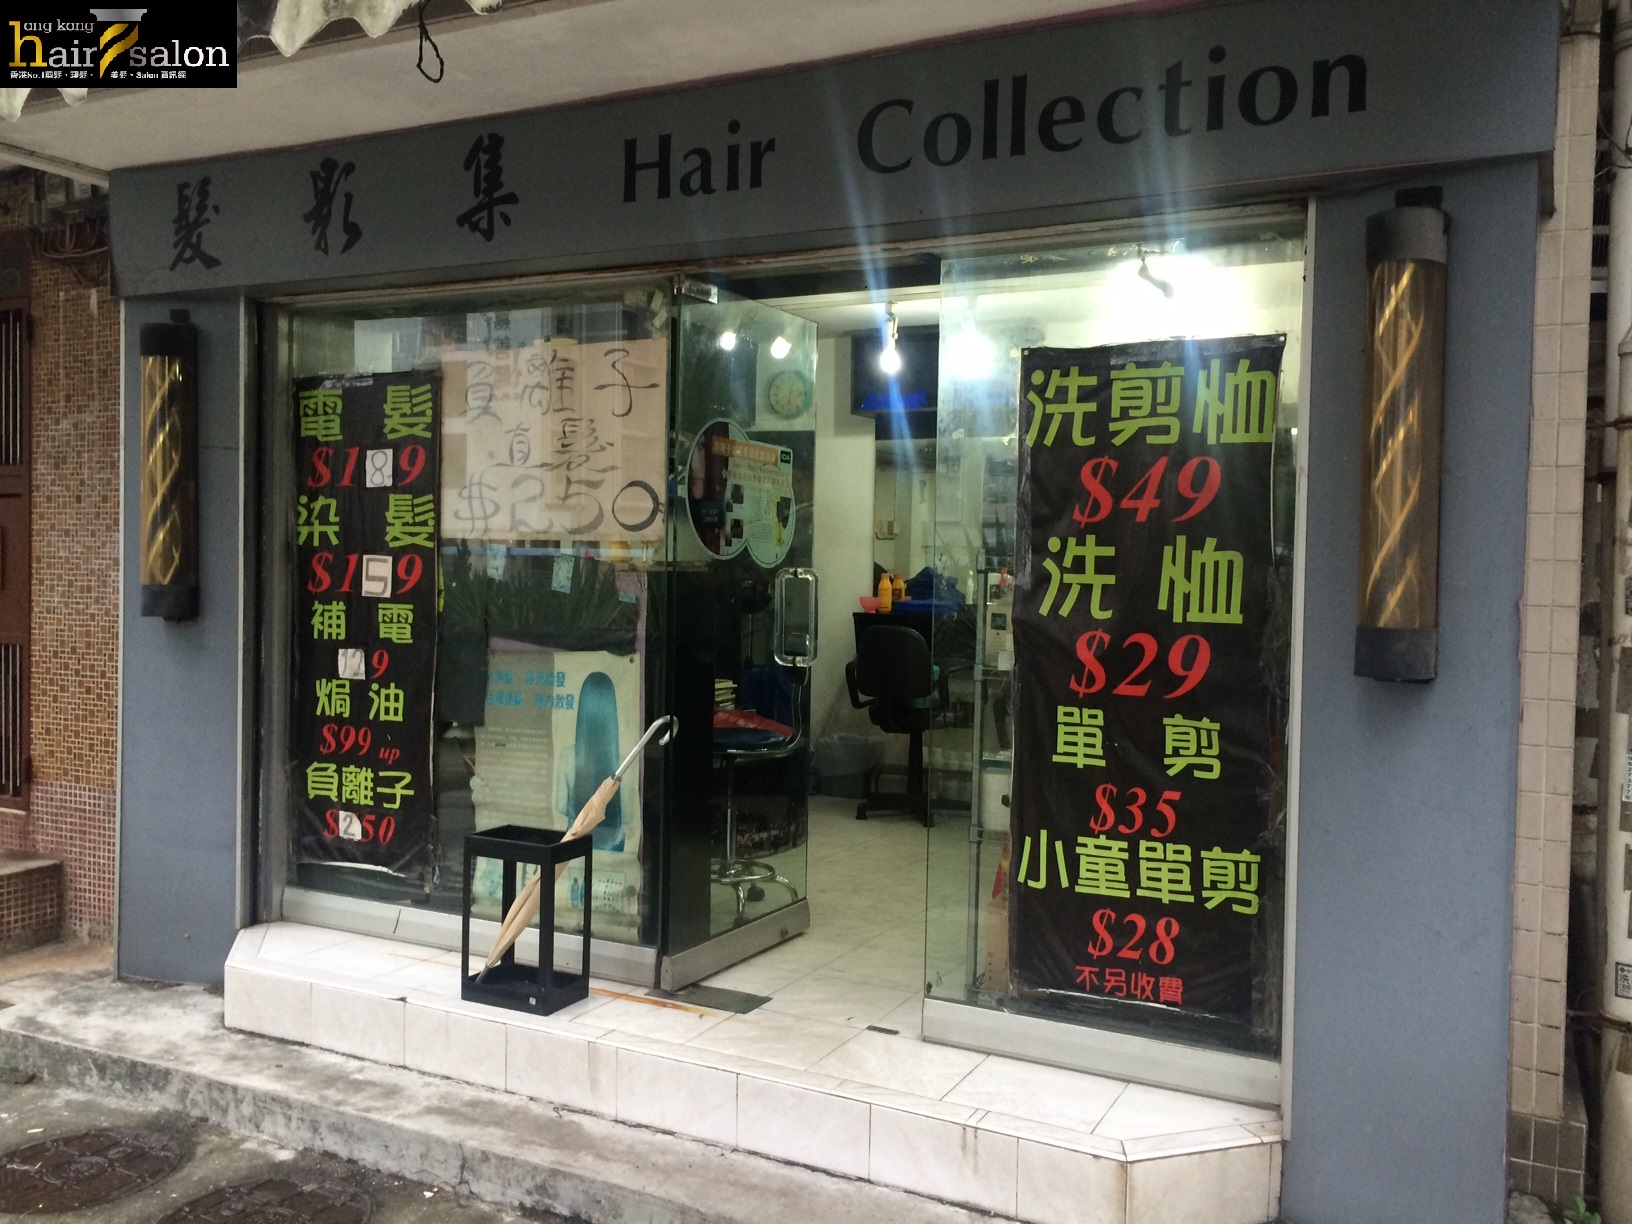 電髮/負離子: 髮影集 Hair Collection